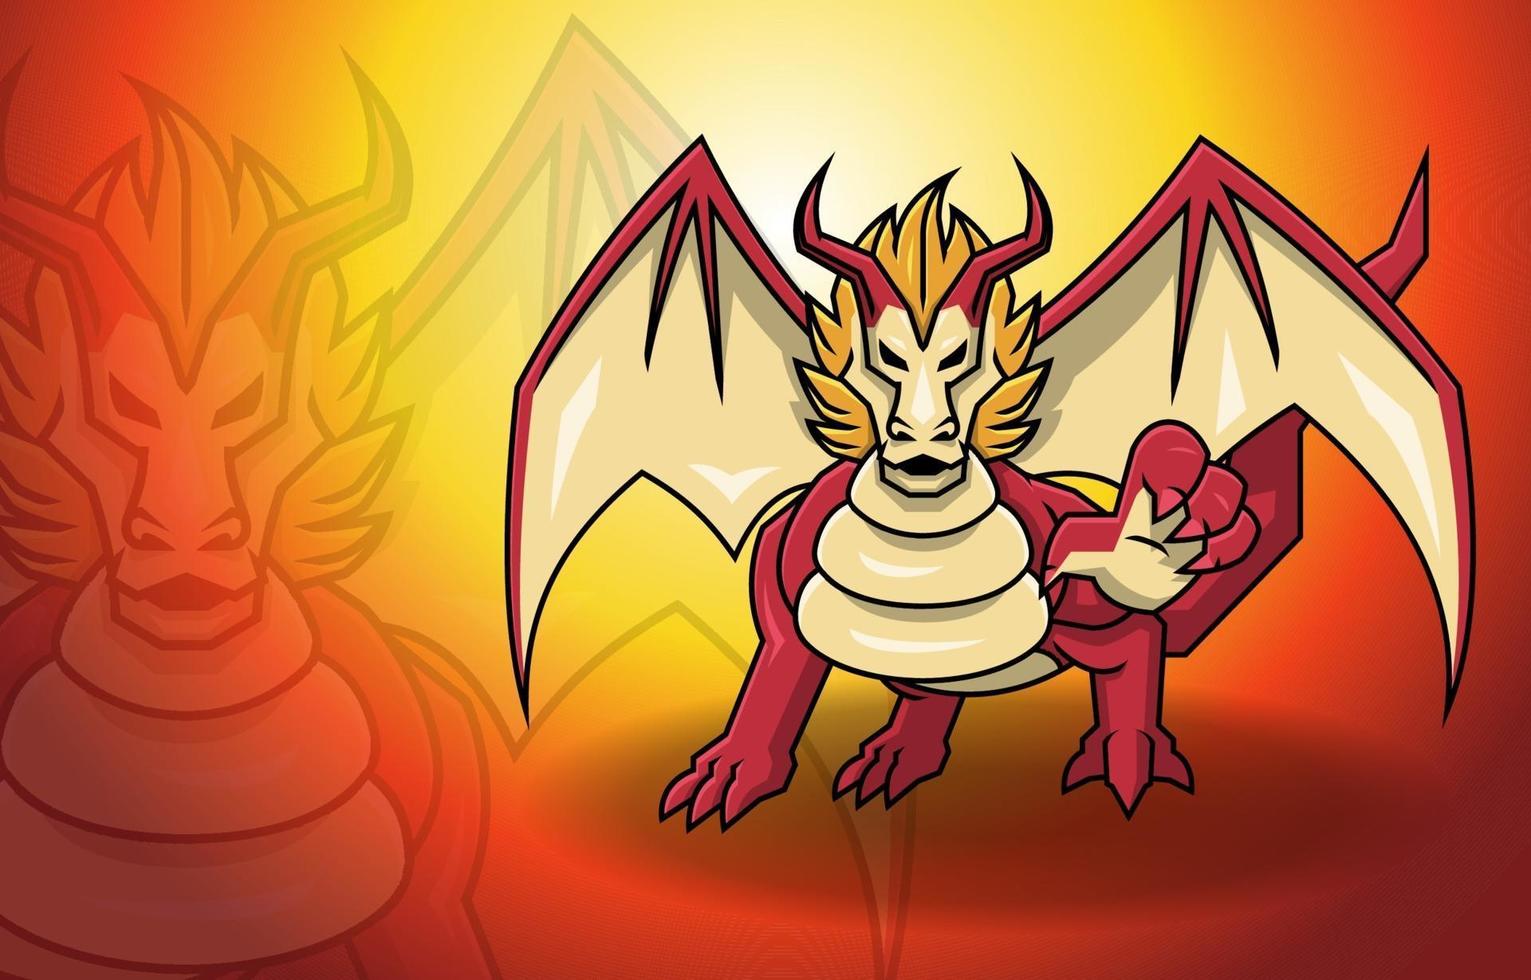 ali di drago rosso fantasia mitologia mostro leggenda creatura vettore